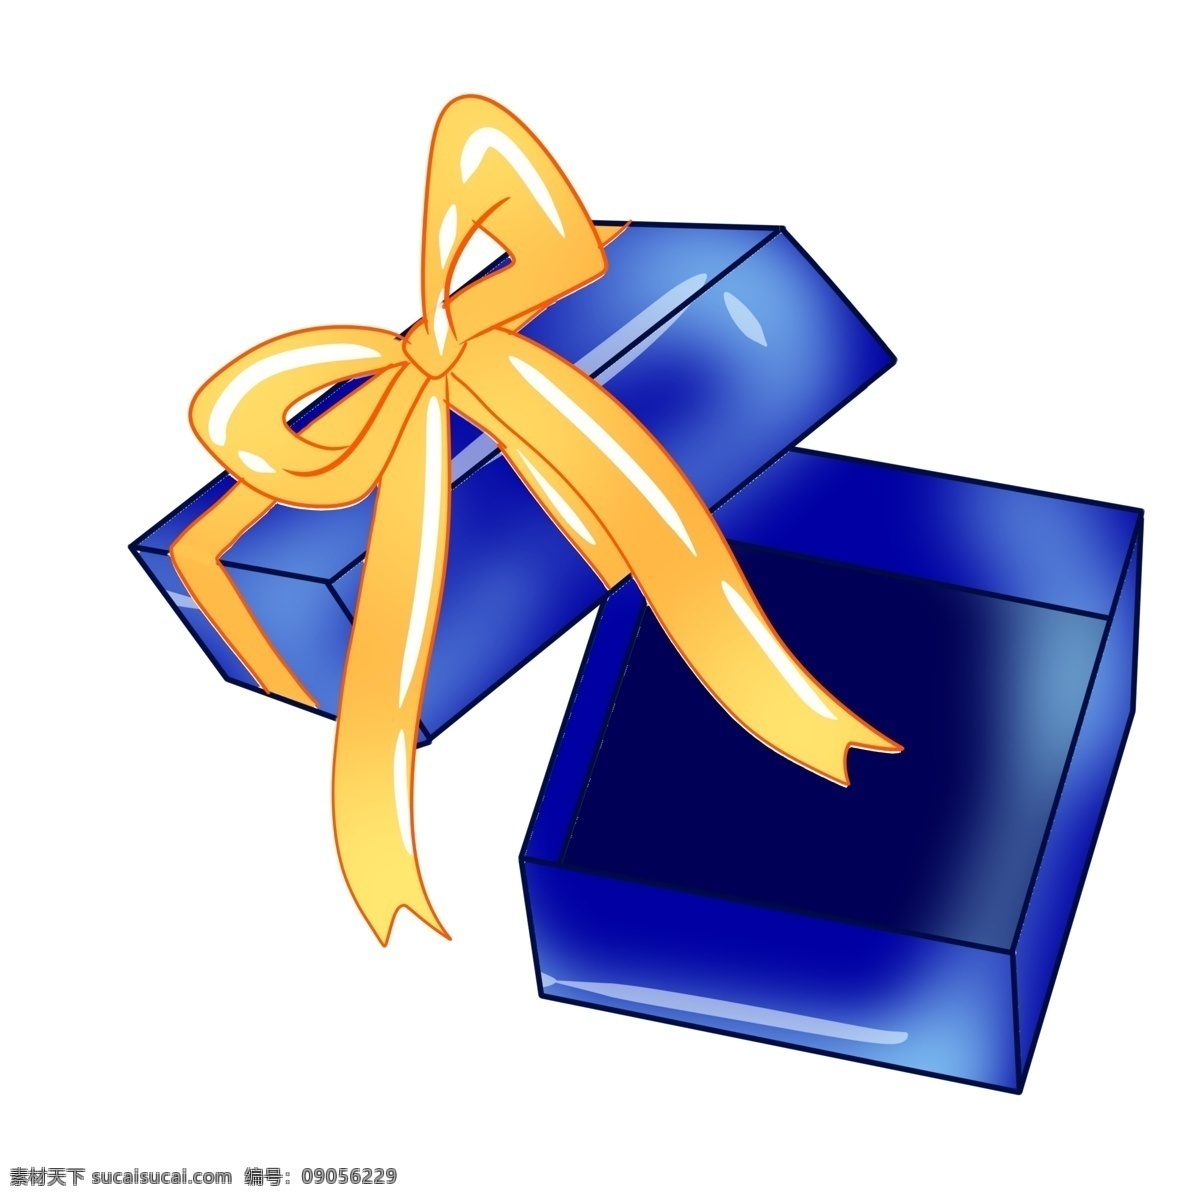 深蓝色 打开 礼盒 礼品礼盒 系了彩带 精美的结 打开的状态 送人礼物 包装 装饰 方形礼盒 蝴蝶结